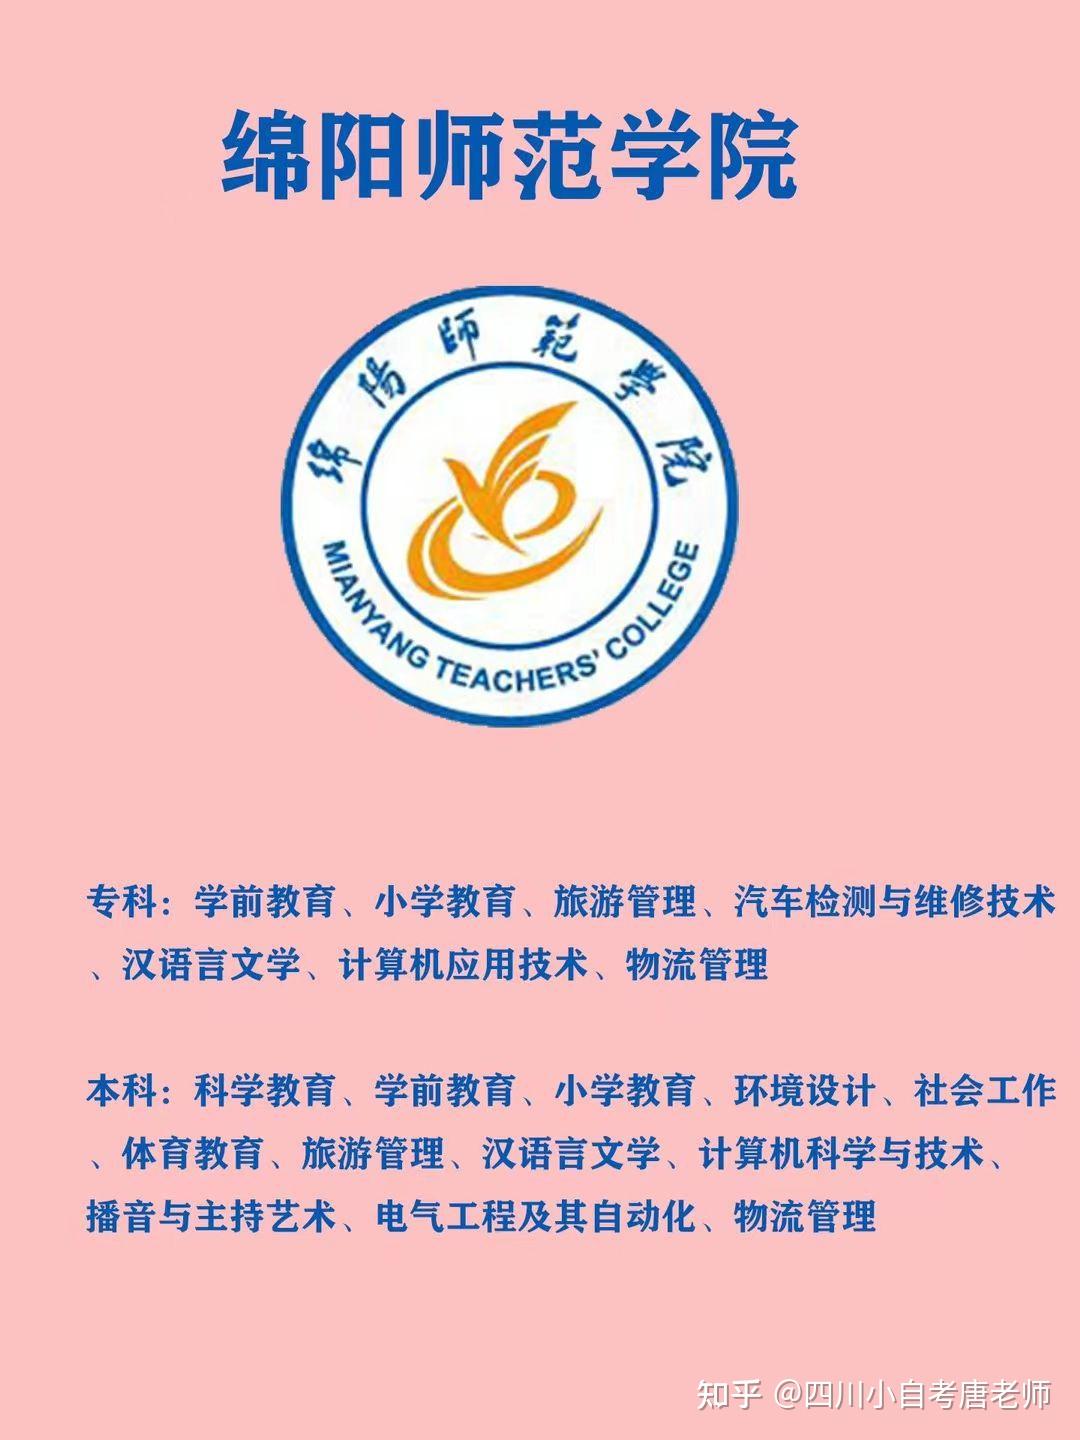 绵阳师范学院logo图片